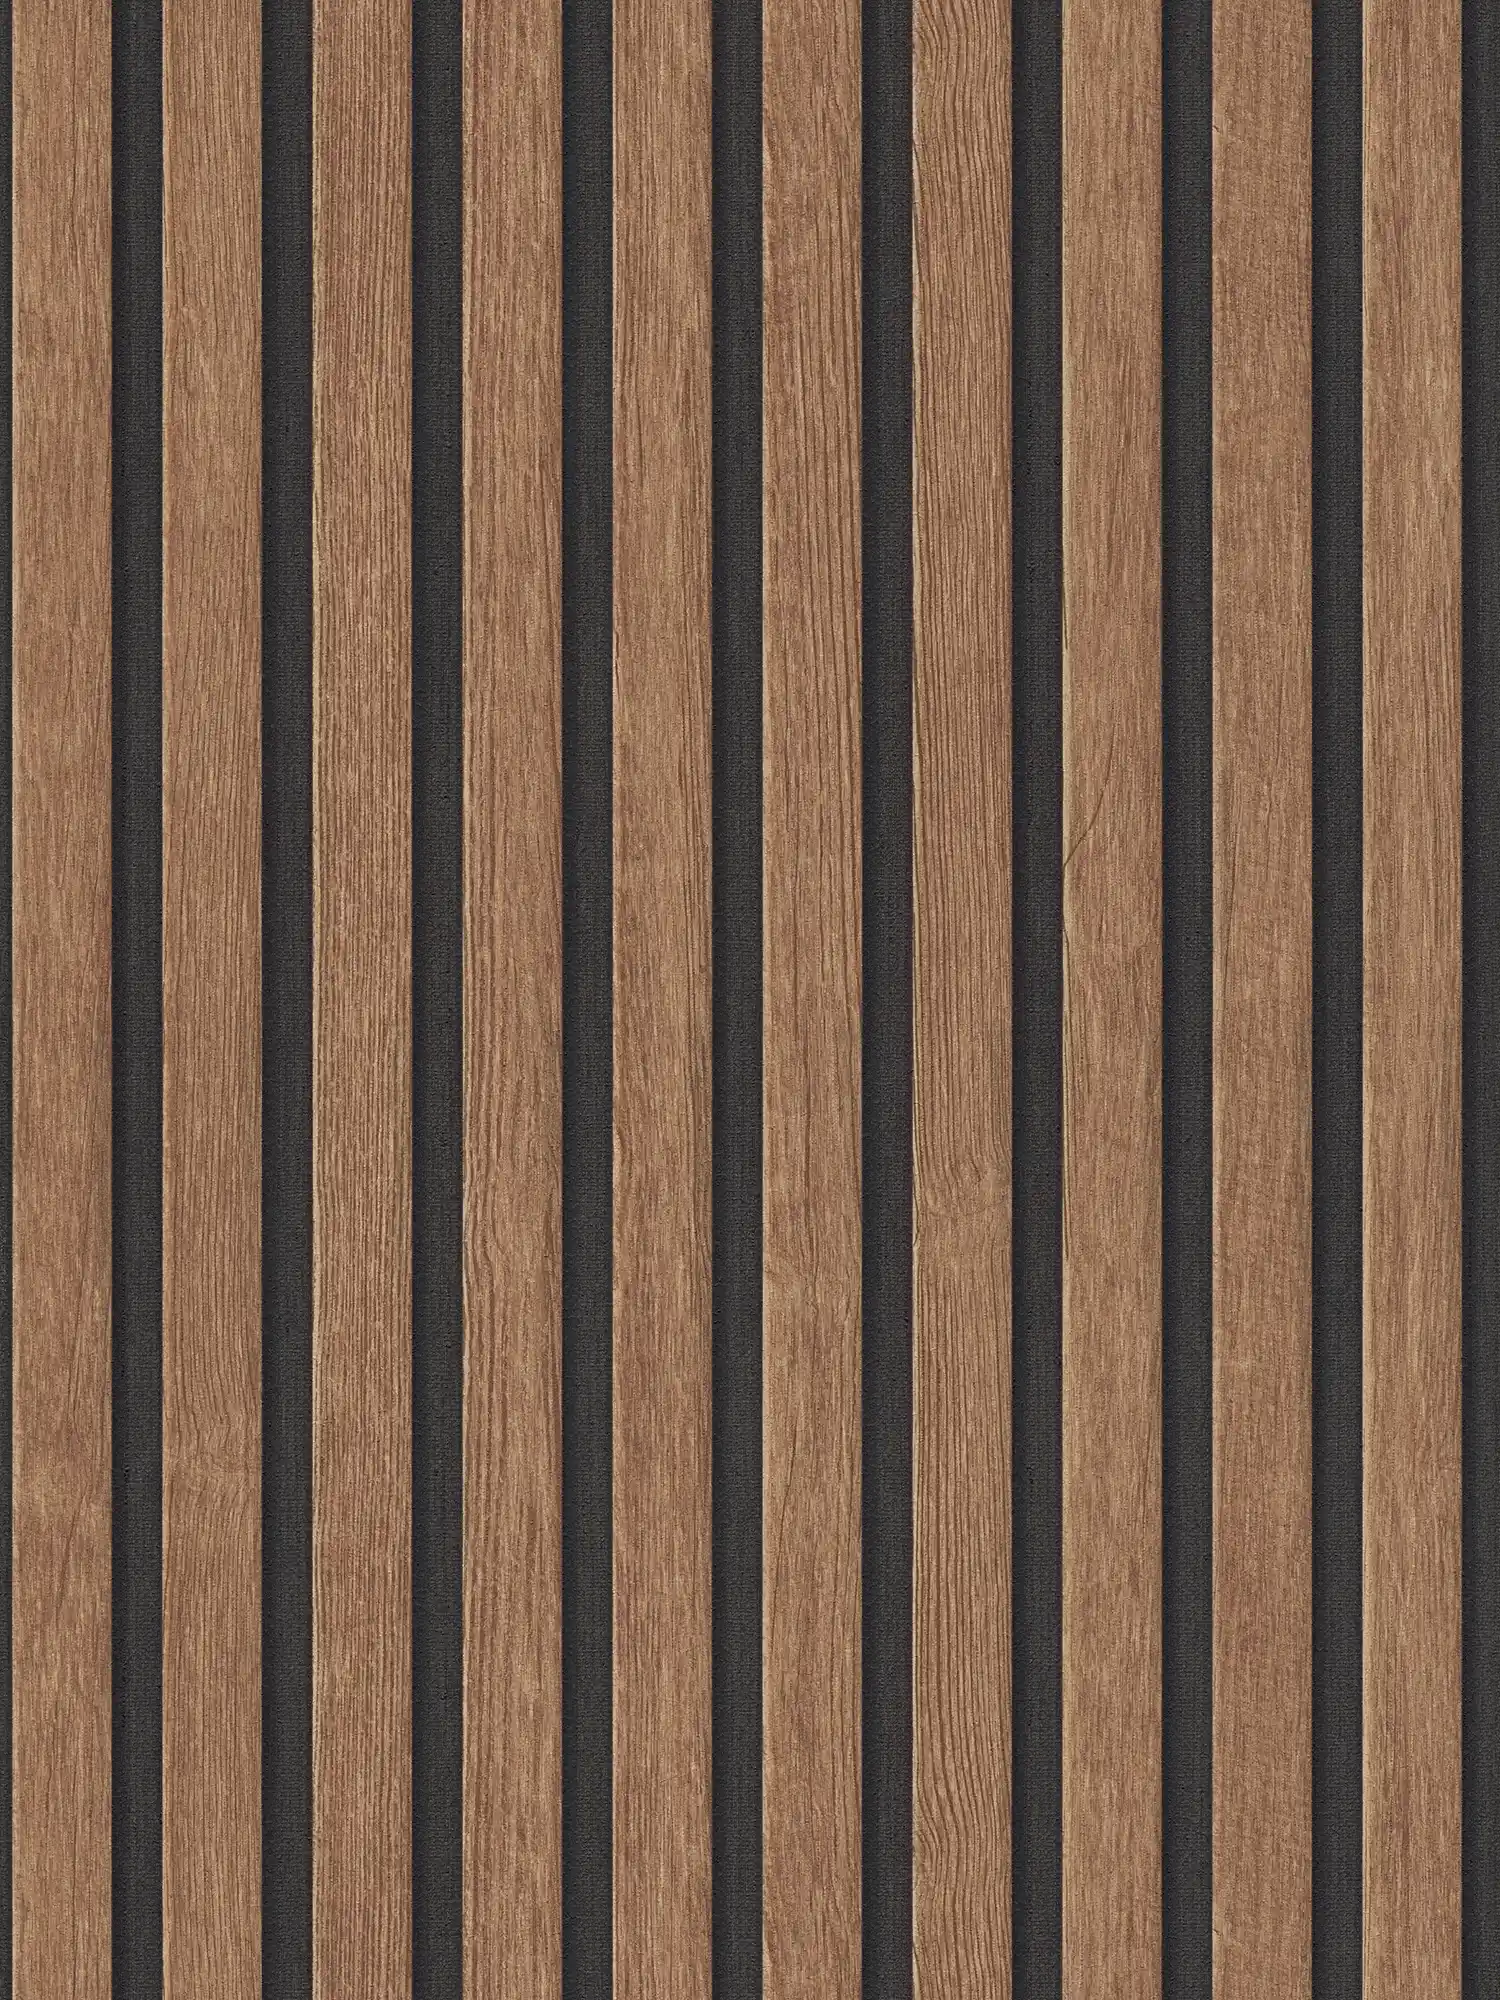 Panneaux acoustiques Papier peint intissé aspect bois réaliste - marron, noir
